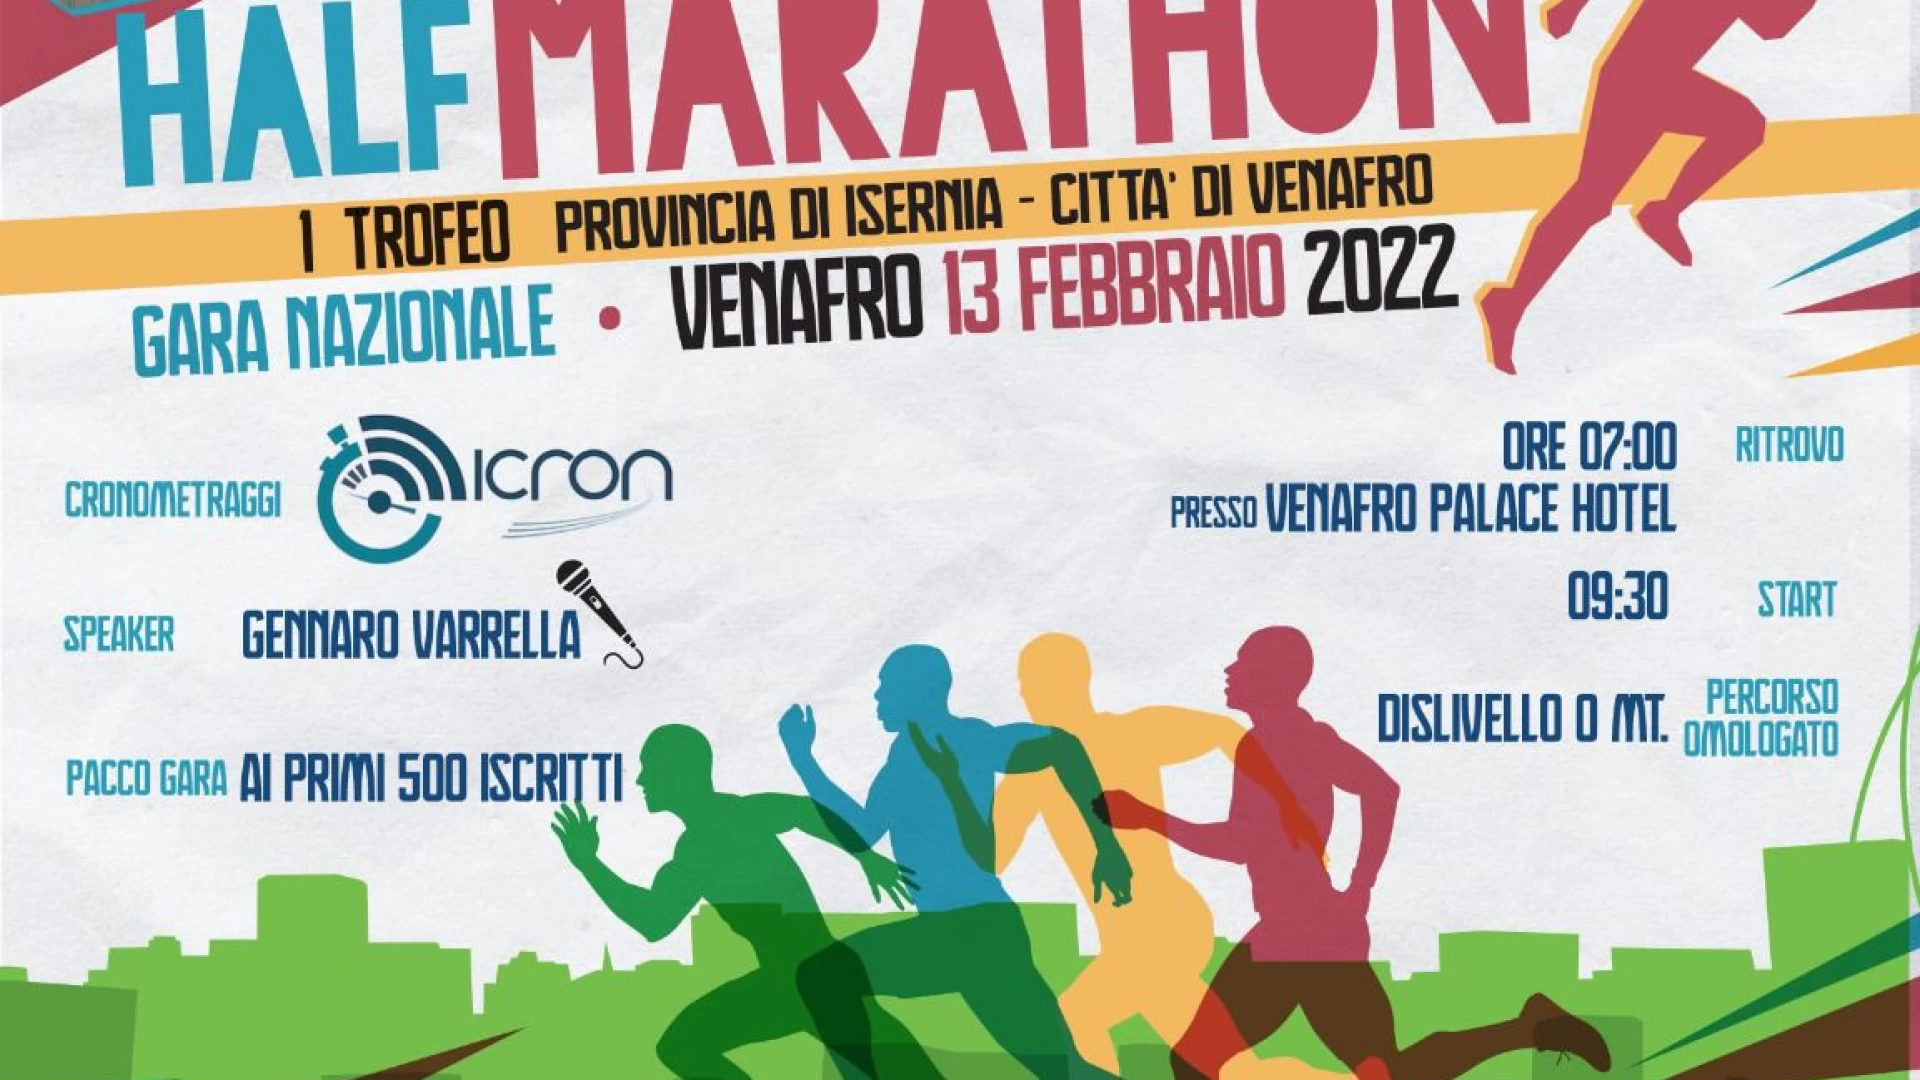 Atletica: domenica 13 febbraio la prima edizione del Trofeo Provincia di Isernia-Citta di Venafro. Mezza maratona promossa da Nai Isernia e Atletica Venafro.